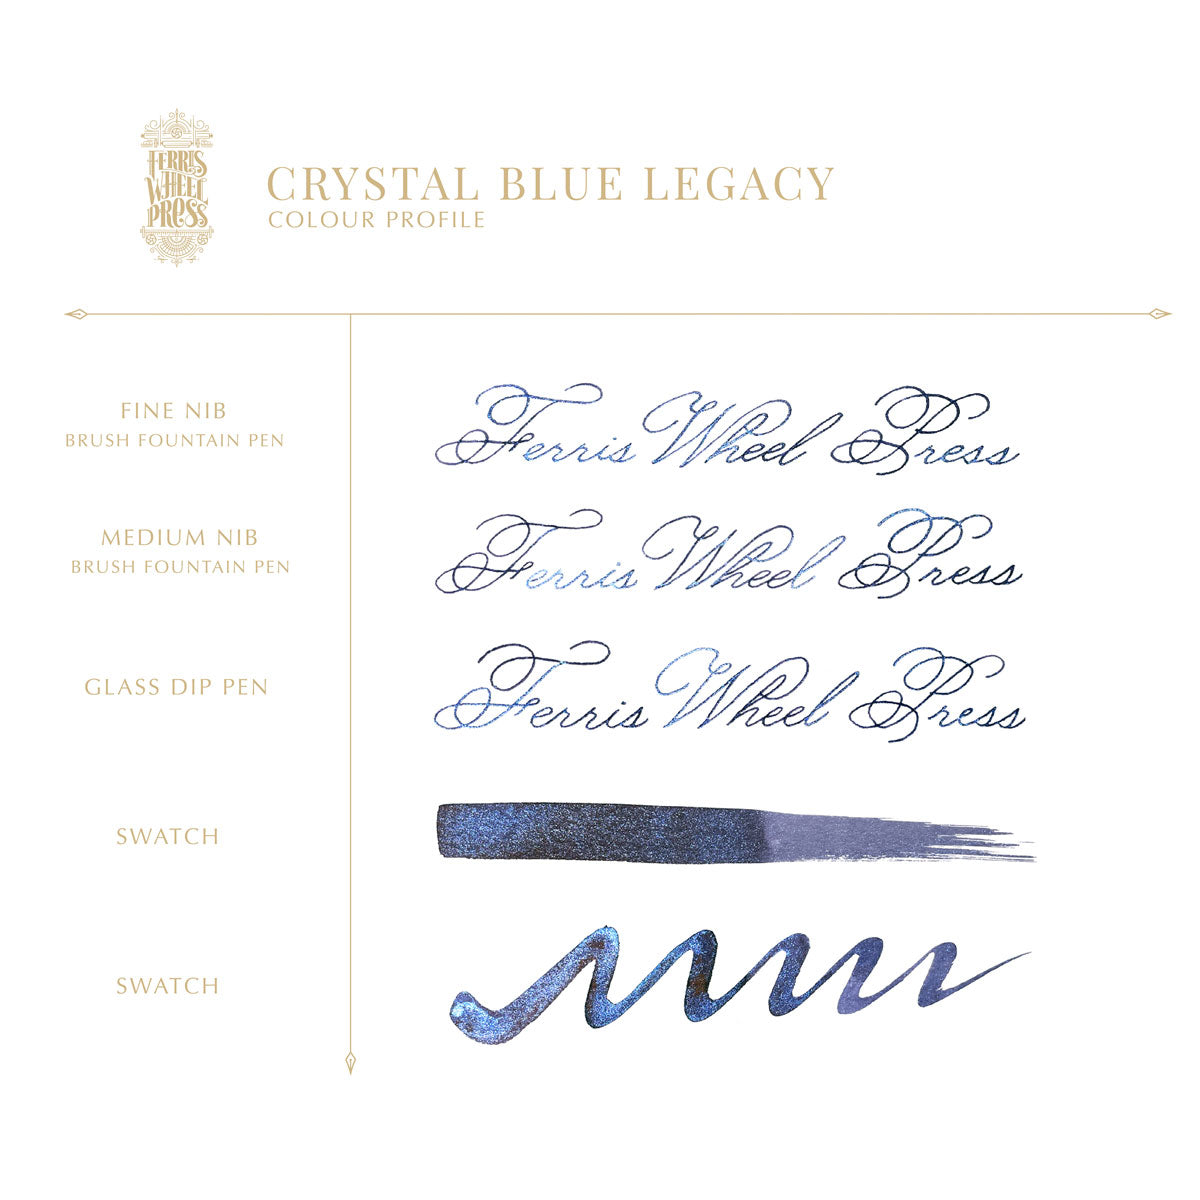 Ferris Wheel Press - Crystal Blue Legacy, 38 ml